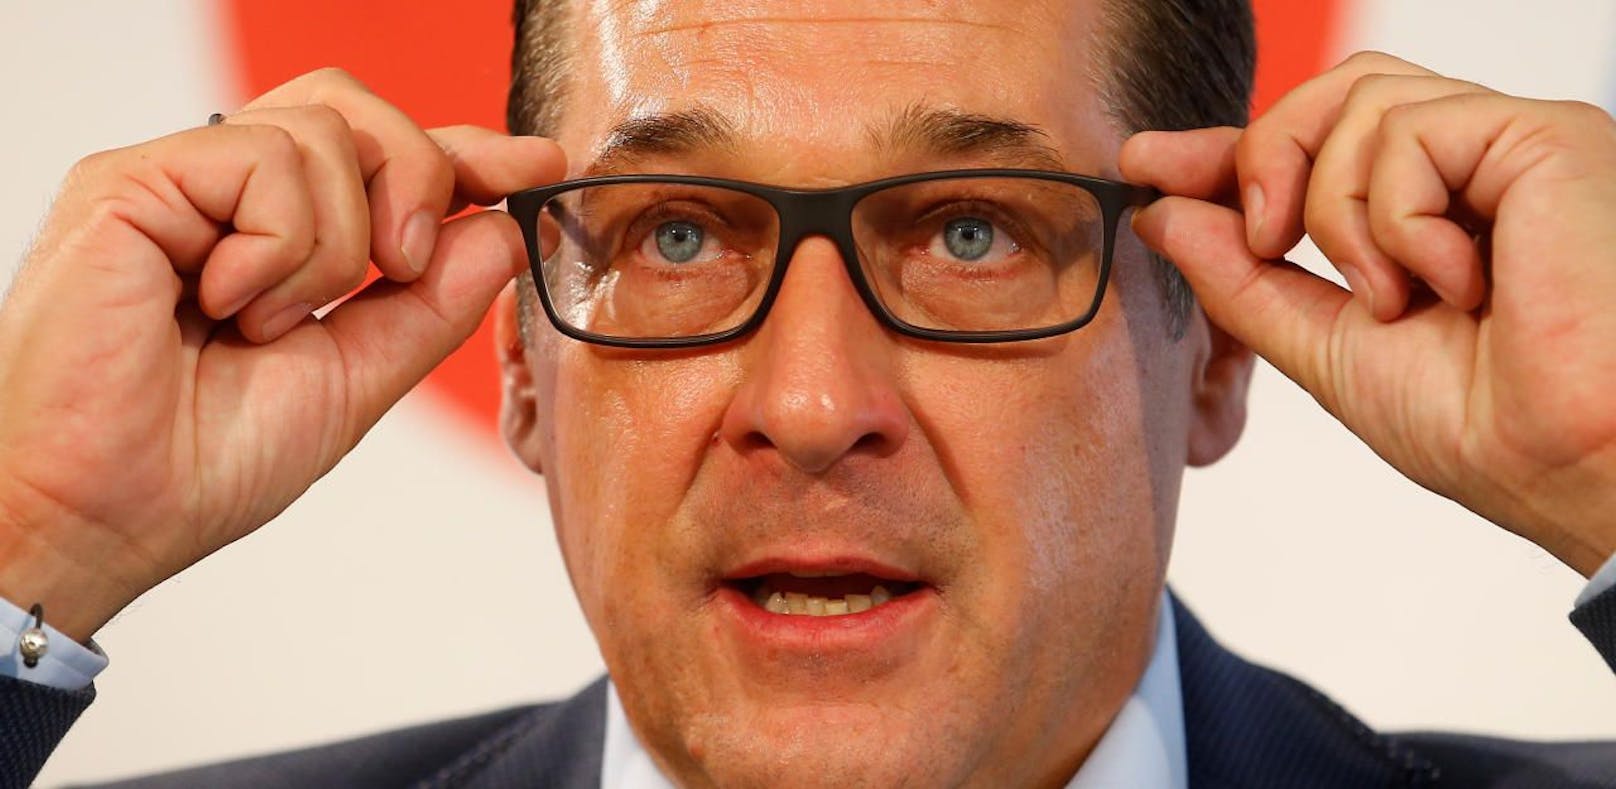 Gewöhnen Sie sich an dieses Bild: Heinz-Christian Strache wird nun öfter Brille tragen.